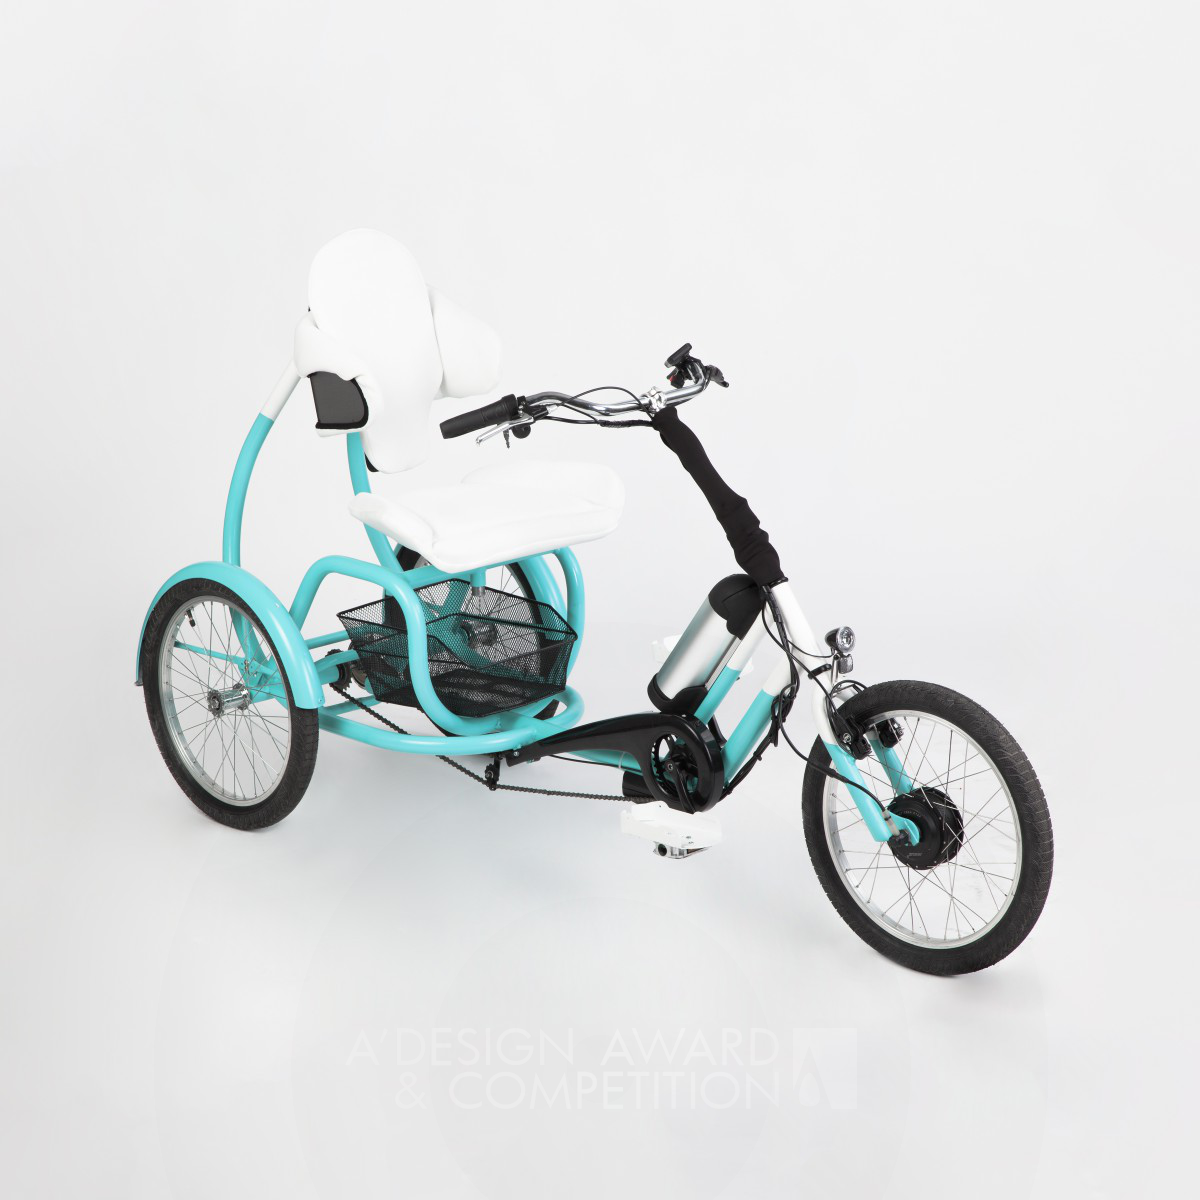 Cero electric tricycle by Tamás Túri